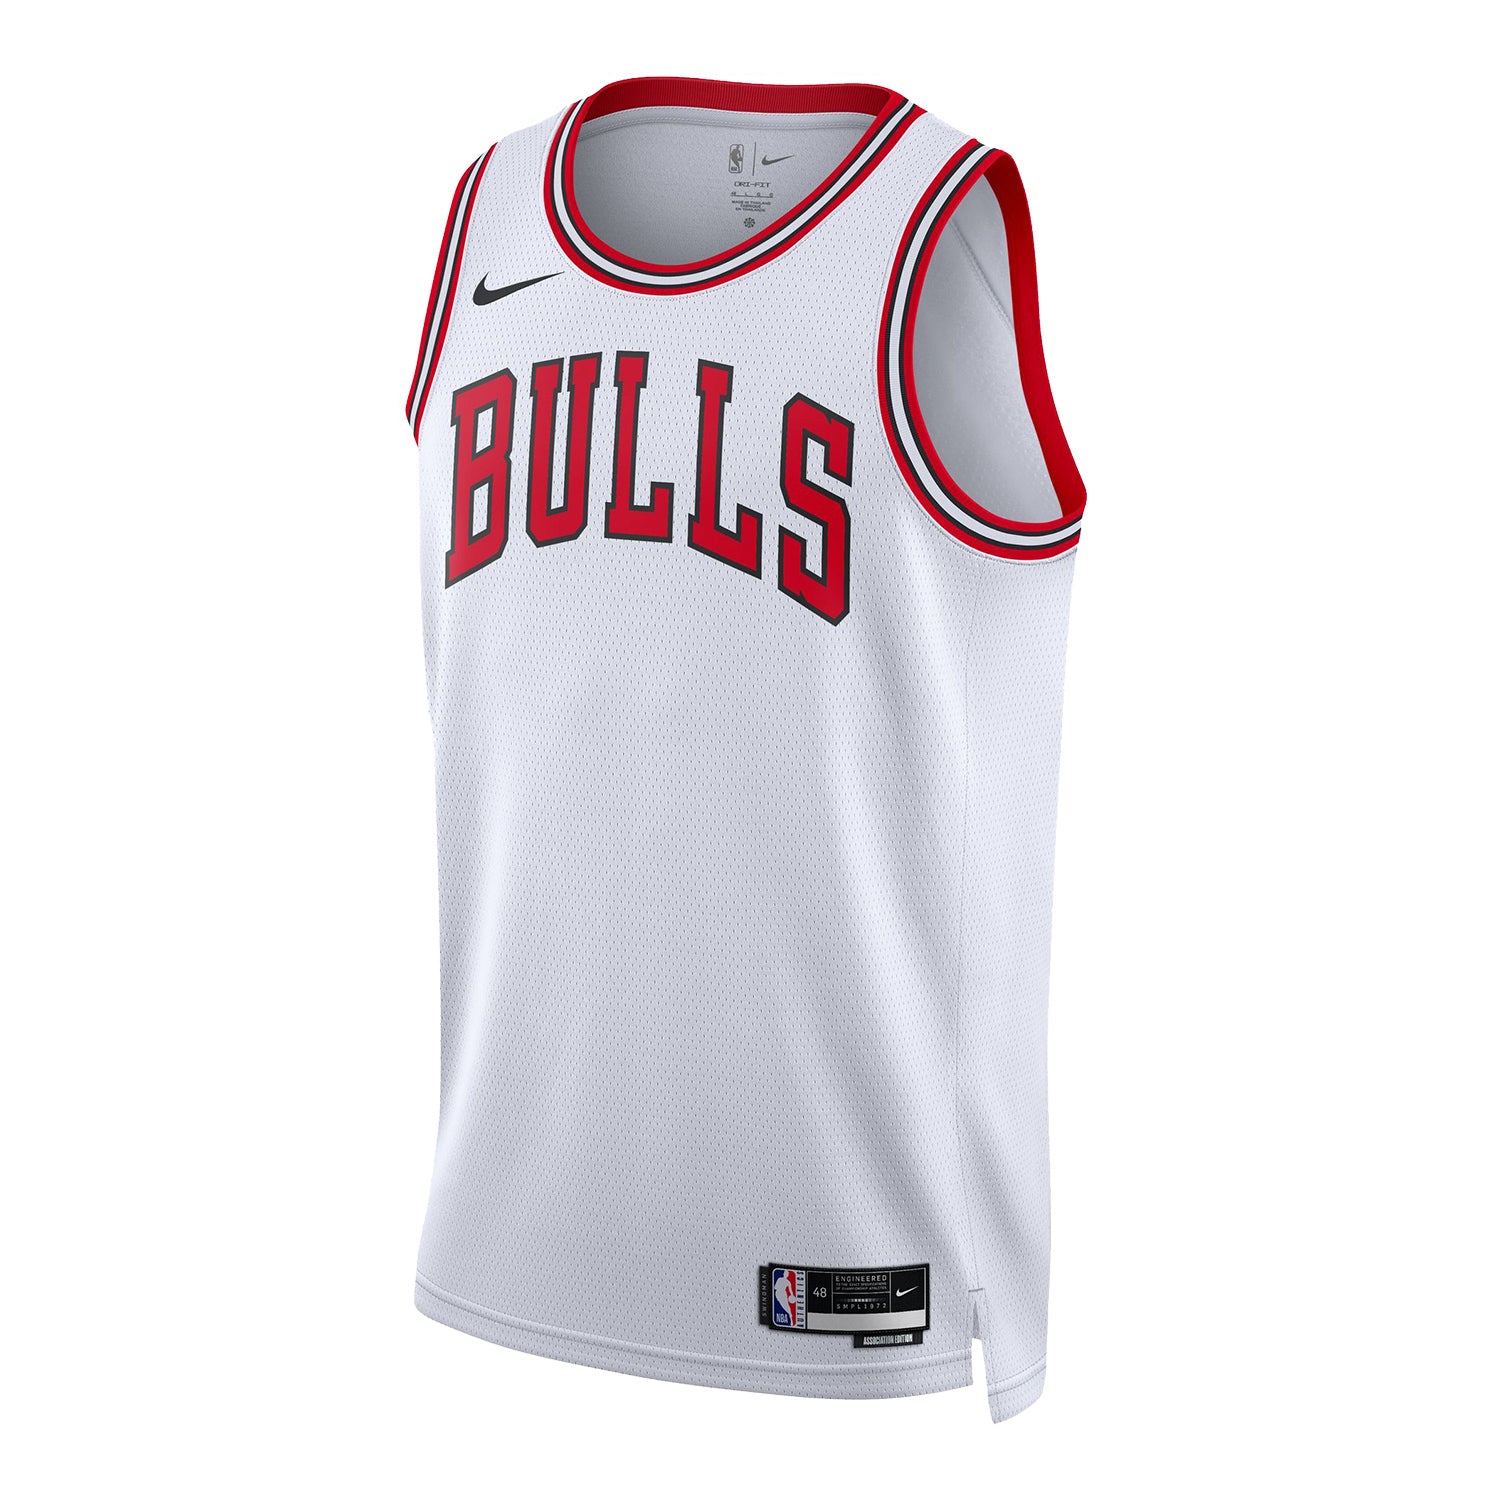 Nike Men's Chicago Bulls Ayo Dosunmu #12 Black T-Shirt